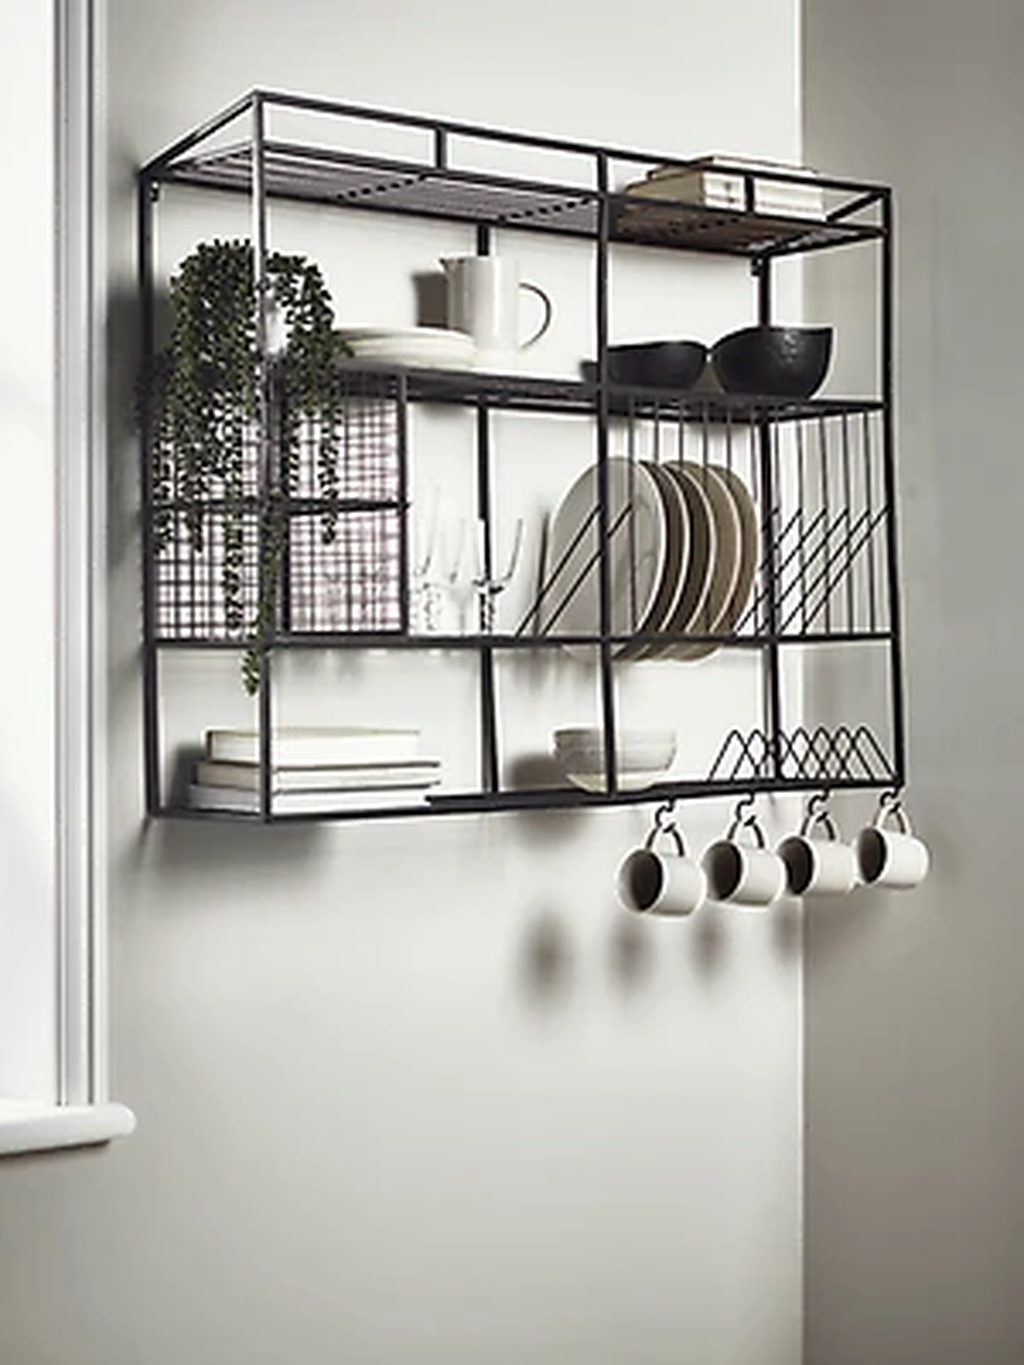 43 Wonderful Industrial Kitchen Shelf Design Ideas To Organize Your ...